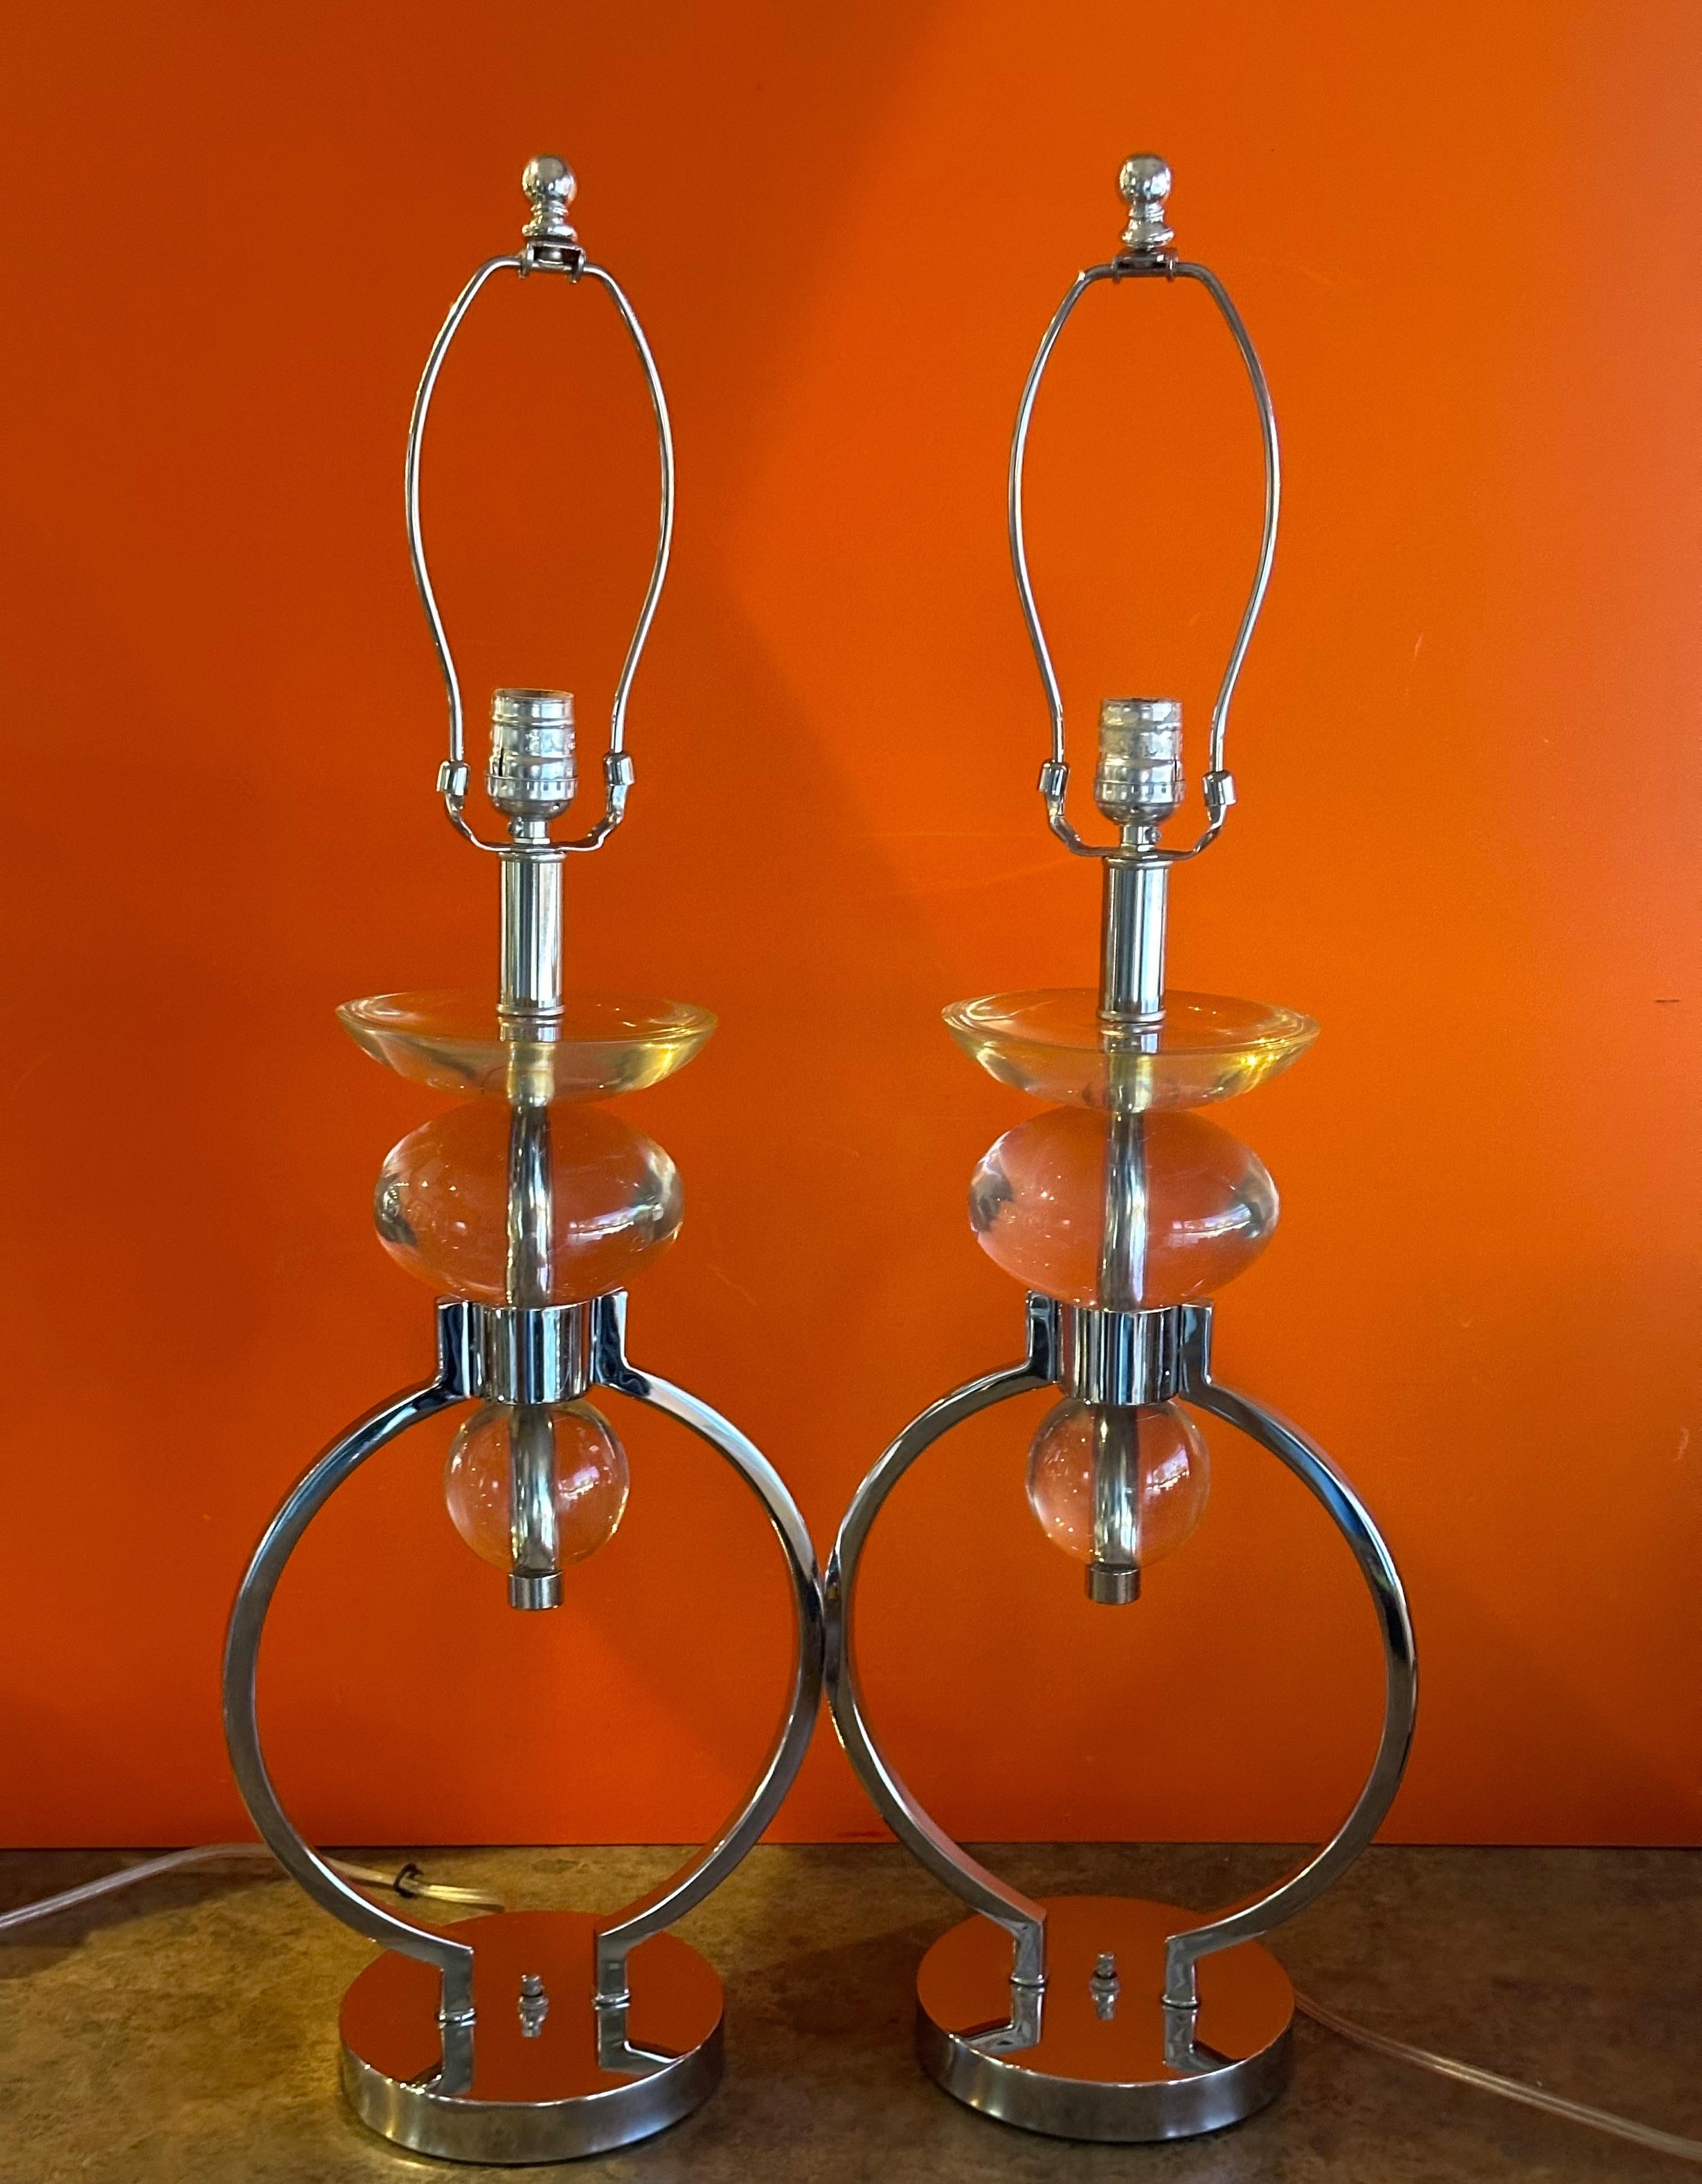 Precioso par de lámparas de sobremesa MCM de cromo y lucita de Hivo Van Teal, de la década de 1970. Estas preciosas lámparas están en muy buen estado y miden 9,5 cm de ancho x 6 cm de profundidad x 30 cm de altura.  La lucita es transparente y no